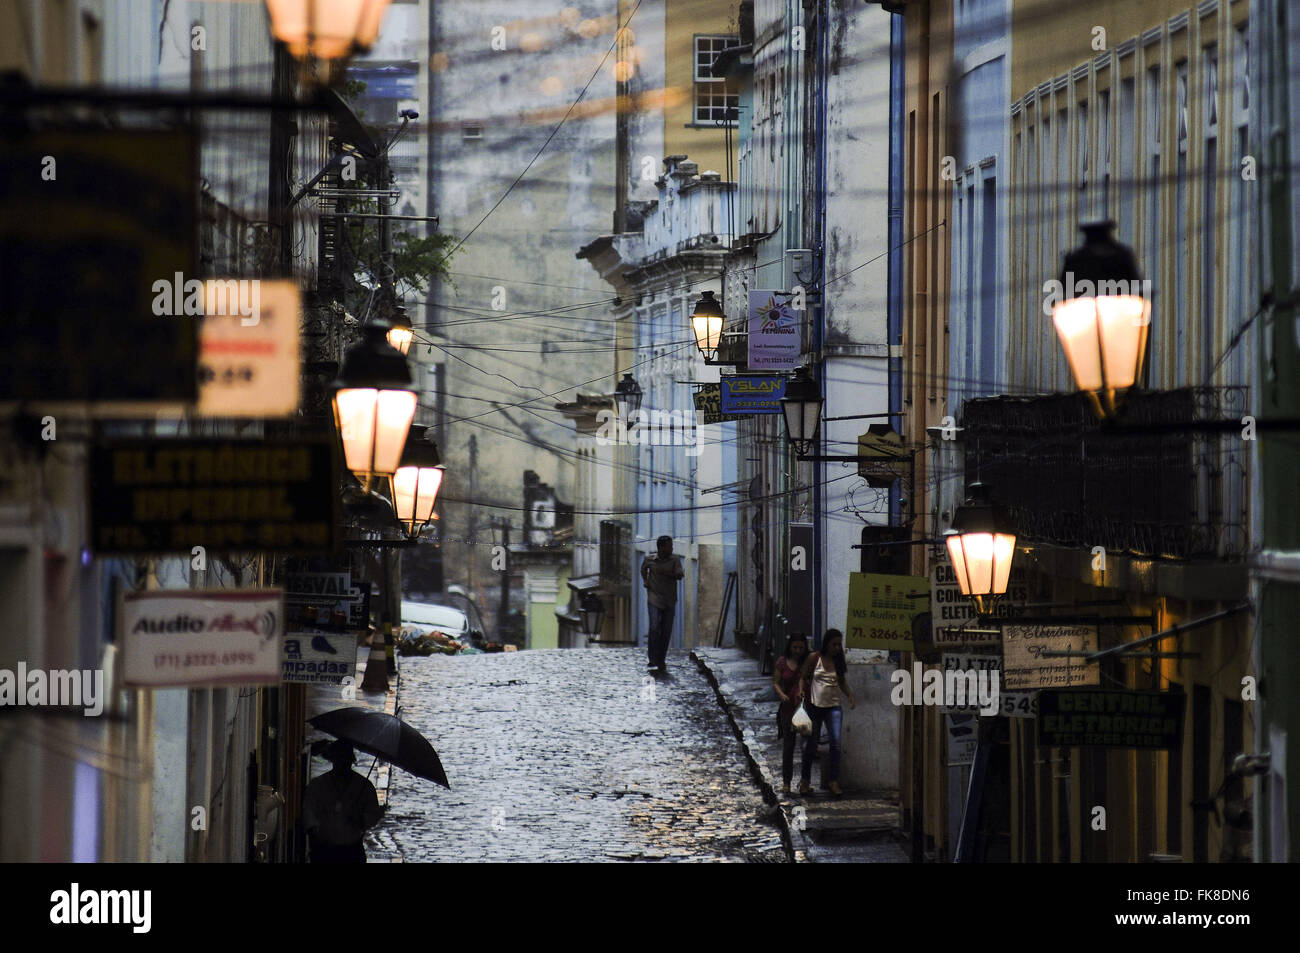 Strada coloniale lampade accese nel centro storico Foto Stock